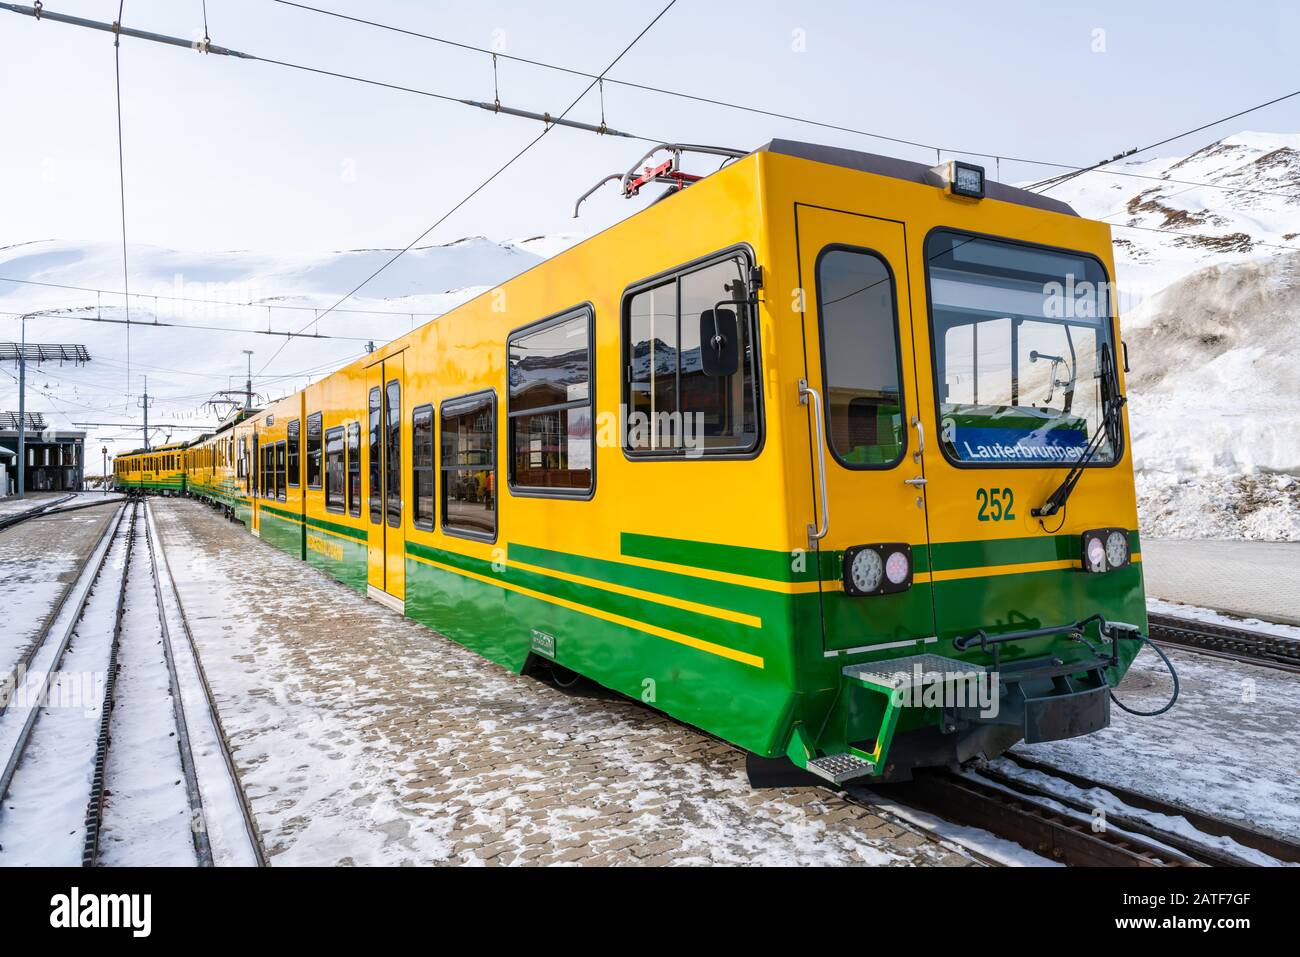 KLEINE SHEIDEGG, SWITZERLAND - JANUARY 13 2020: Cogwheel train on the platform at Kleine Scheidegg railway station Stock Photo